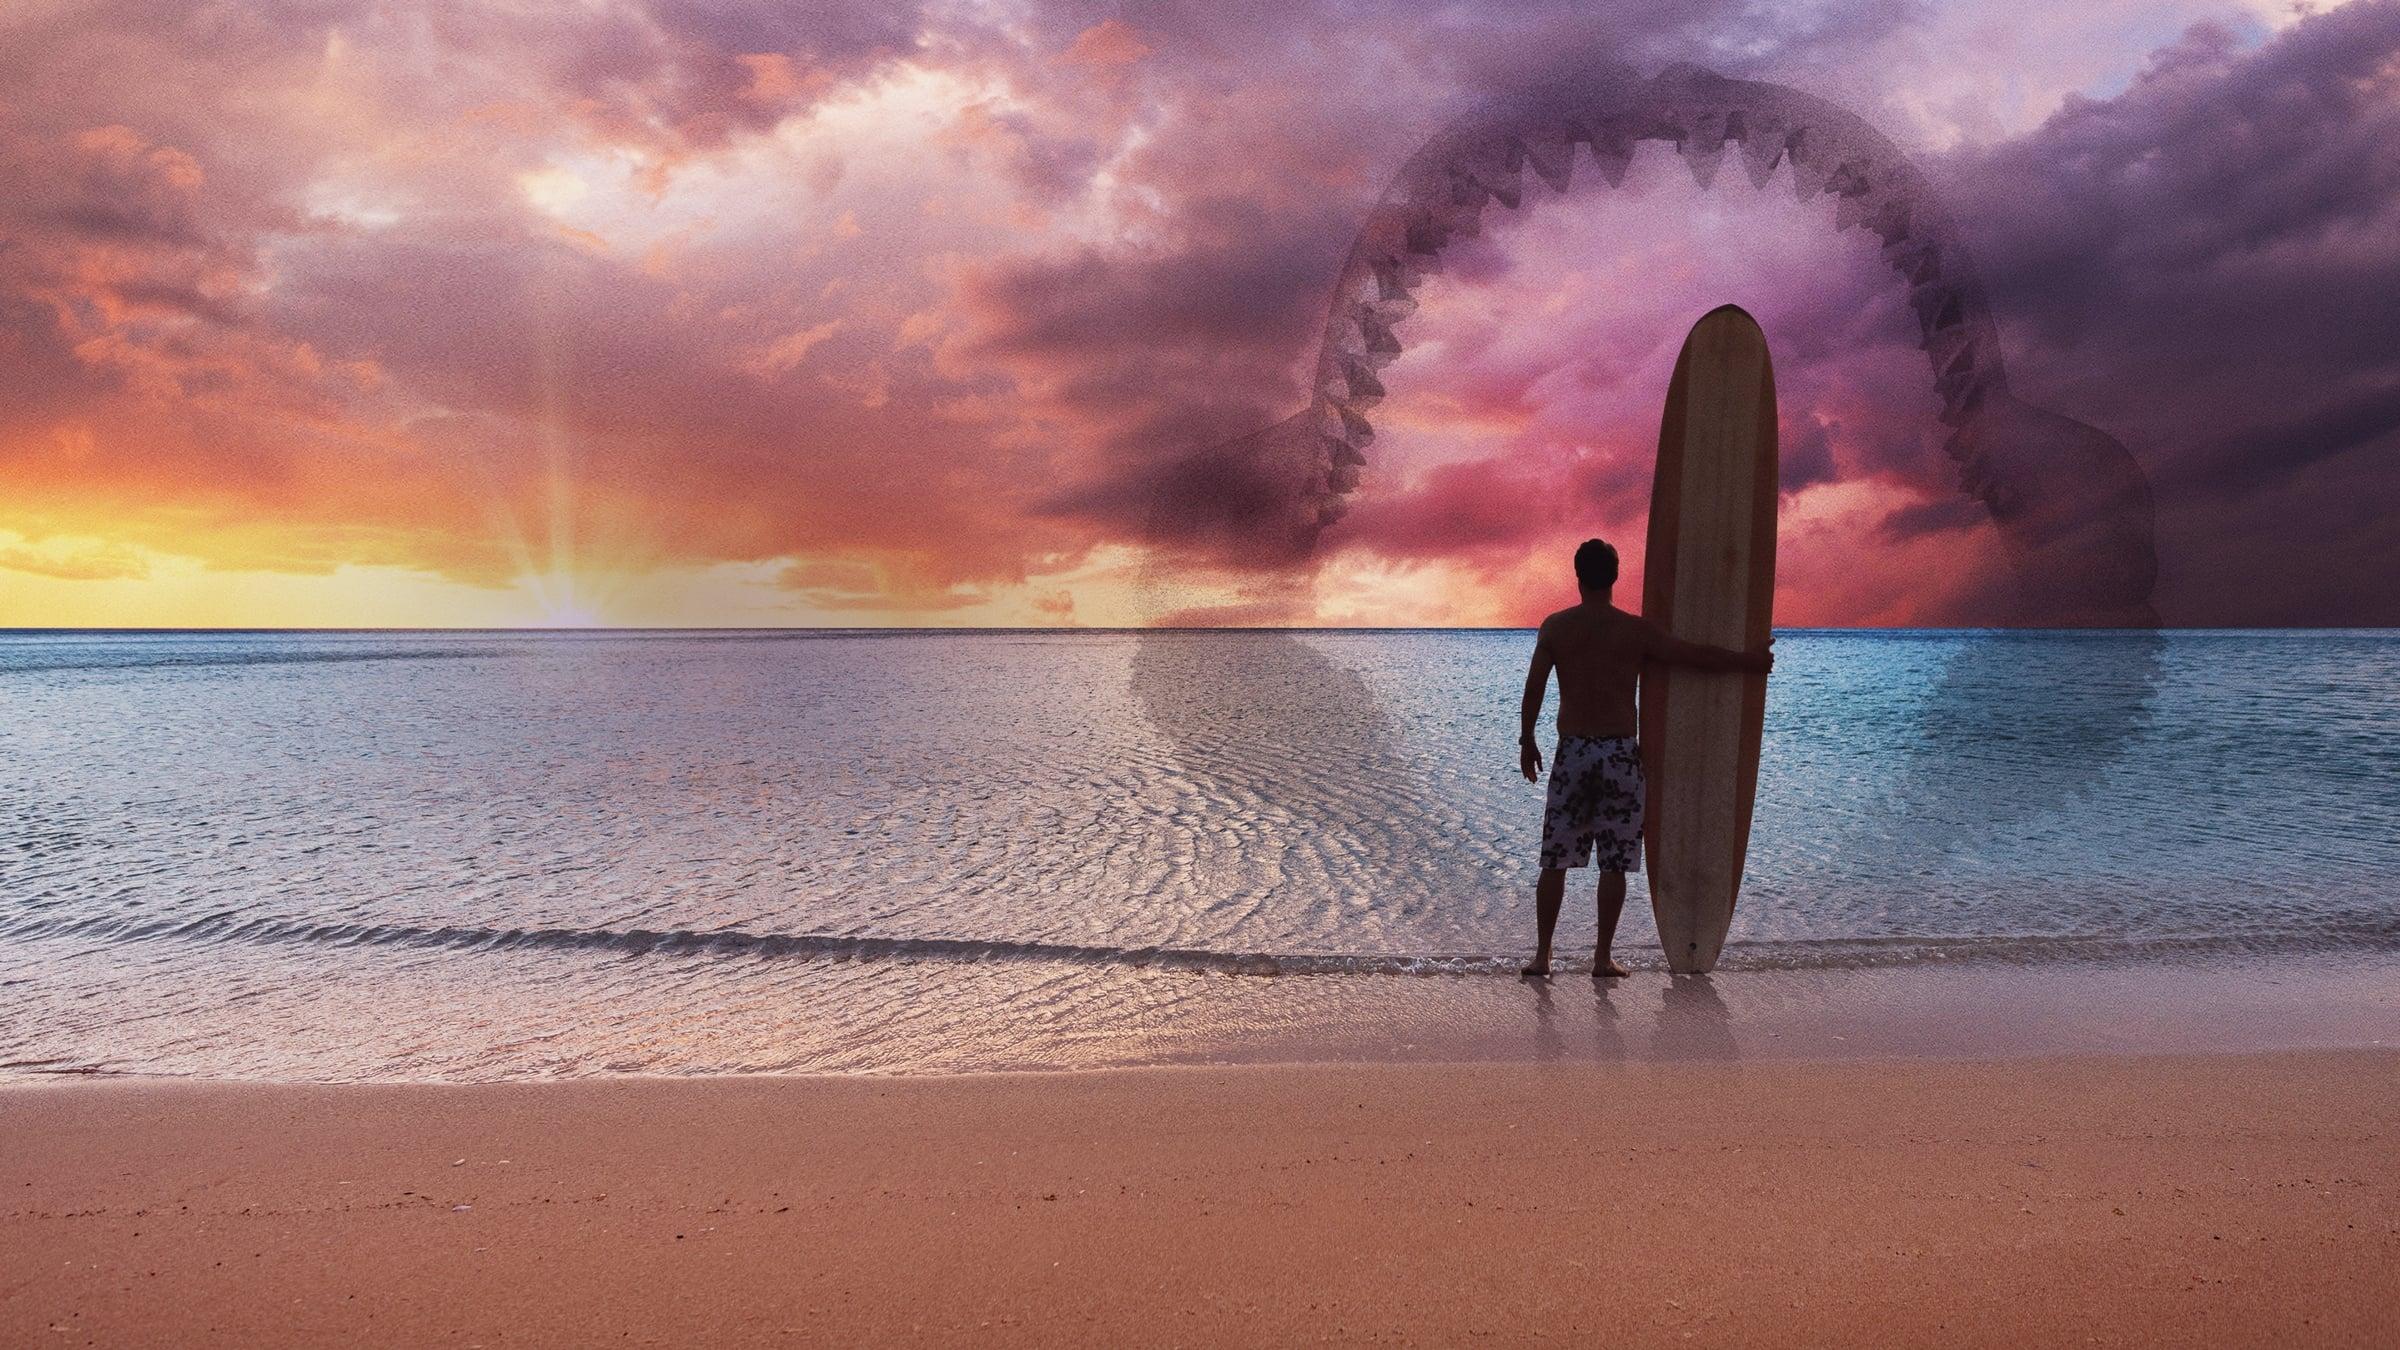 Shark vs. Surfer backdrop